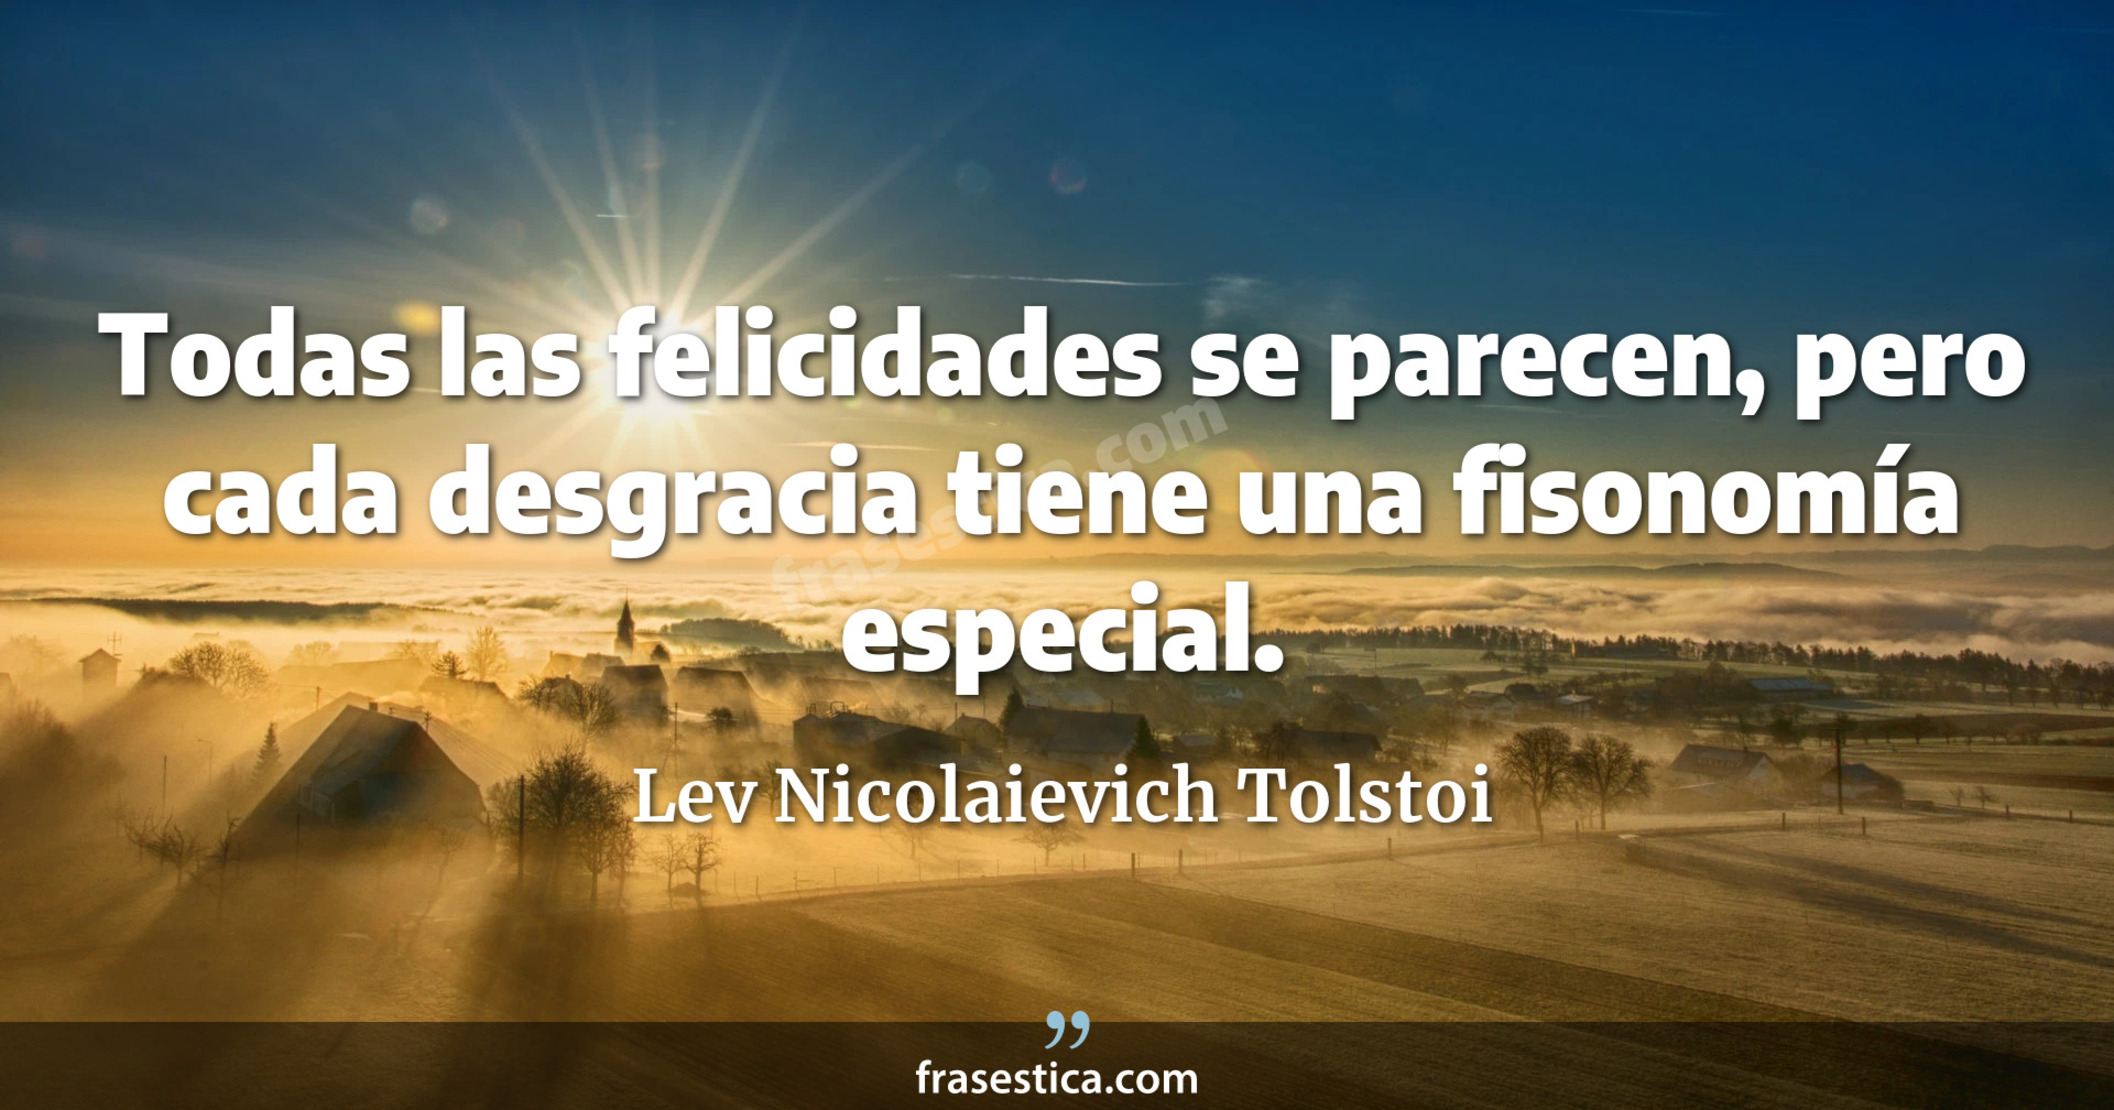 Todas las felicidades se parecen, pero cada desgracia tiene una fisonomía especial. - Lev Nicolaievich Tolstoi